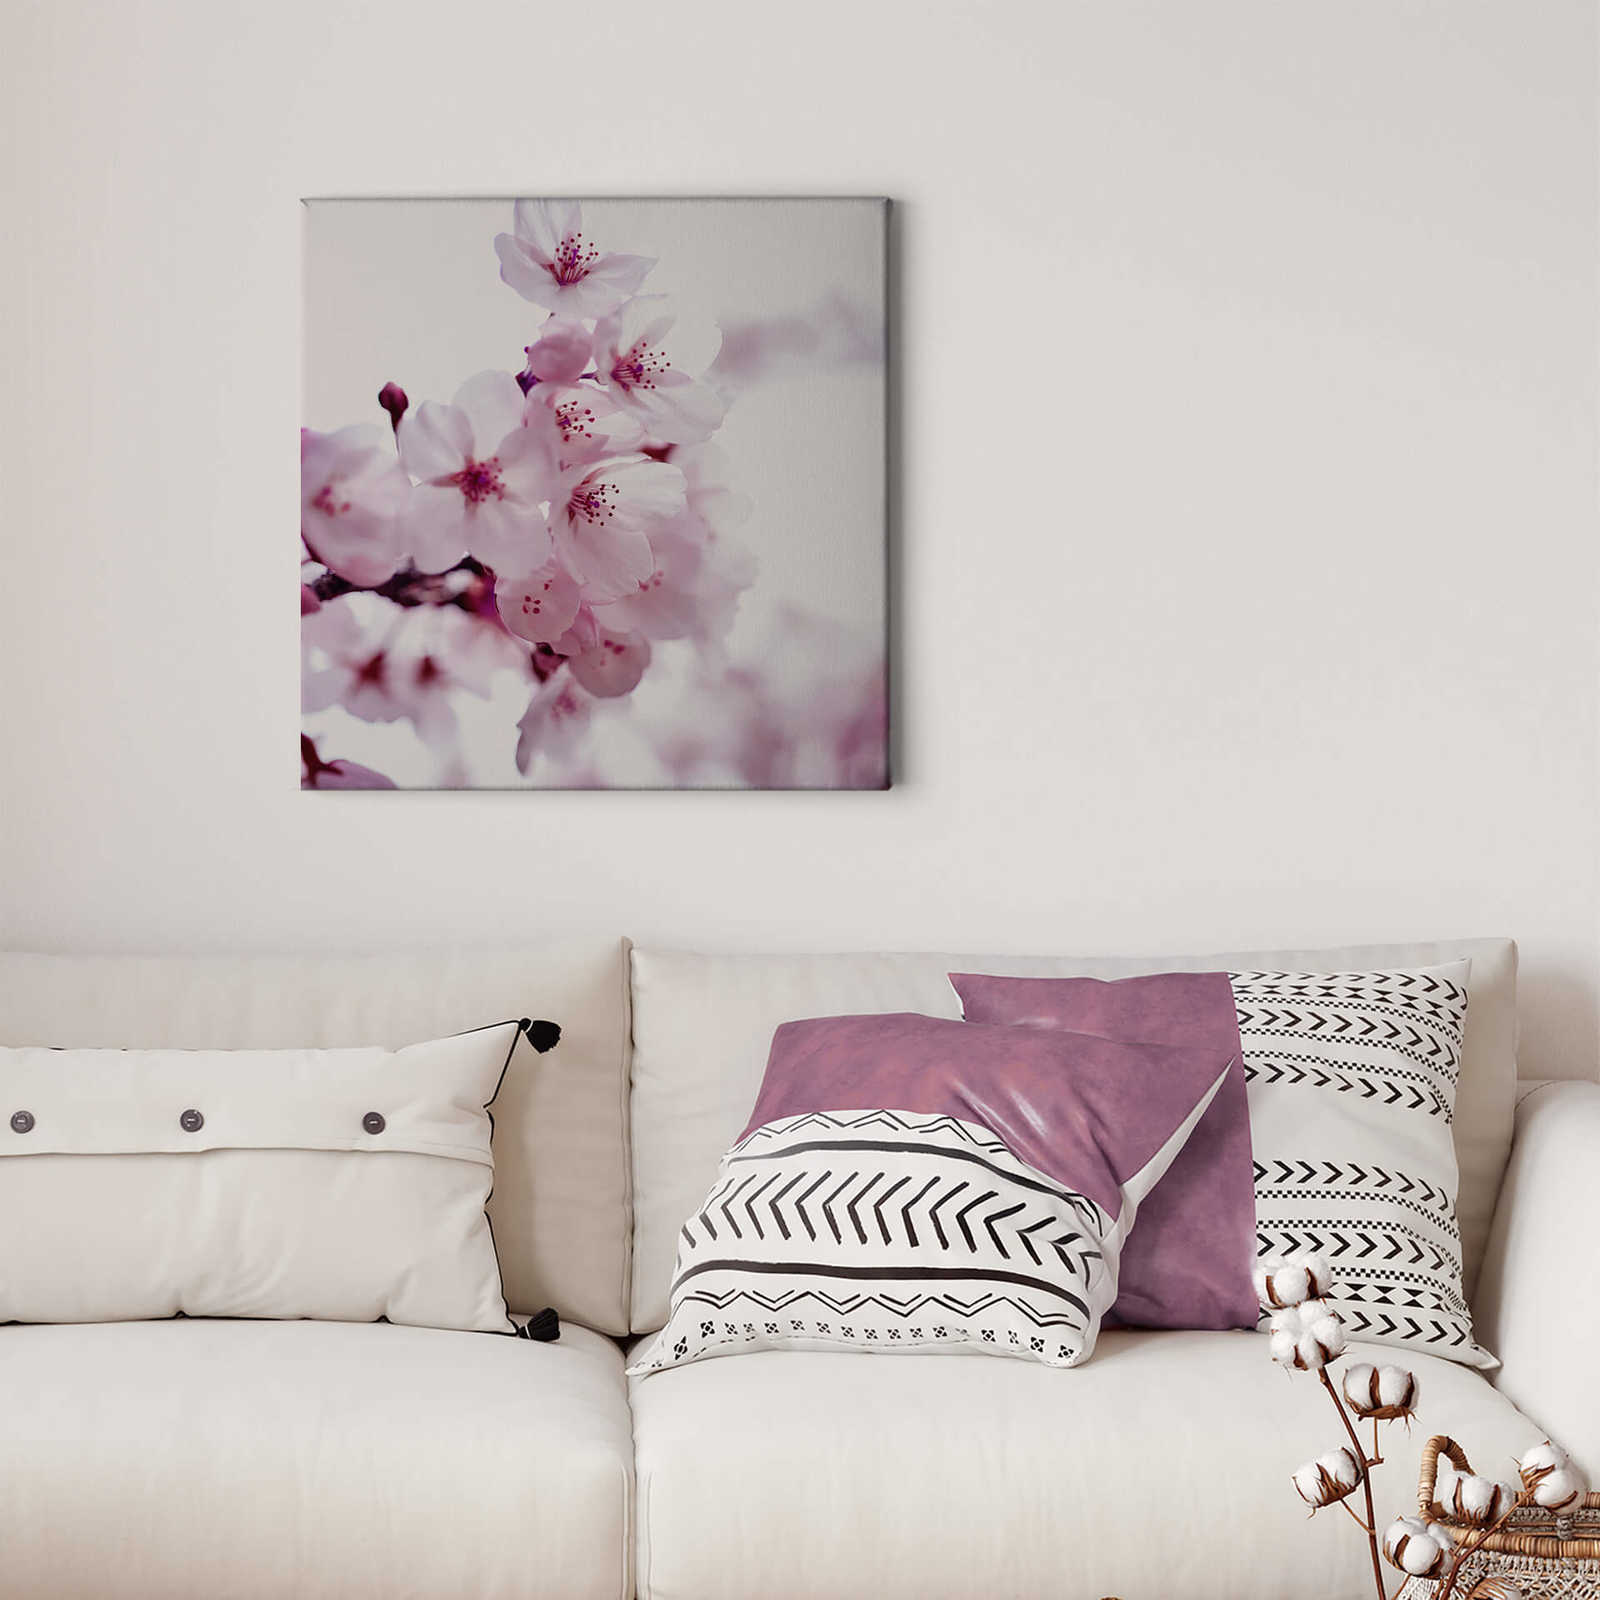             Square canvas print white cherry blossom – pink, white
        